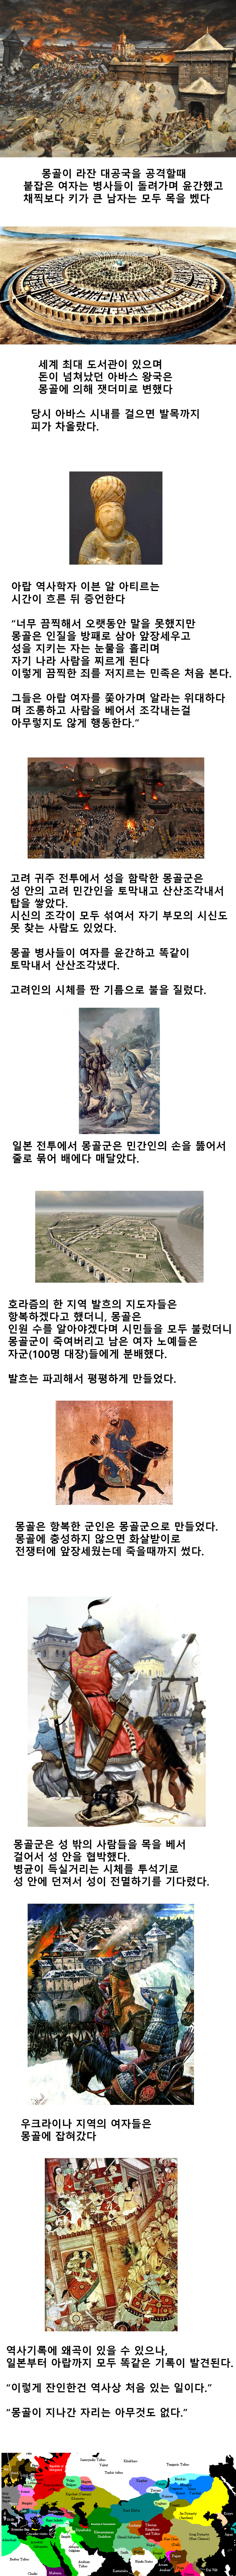 오싹한 몽골의 학살 역사.jpg